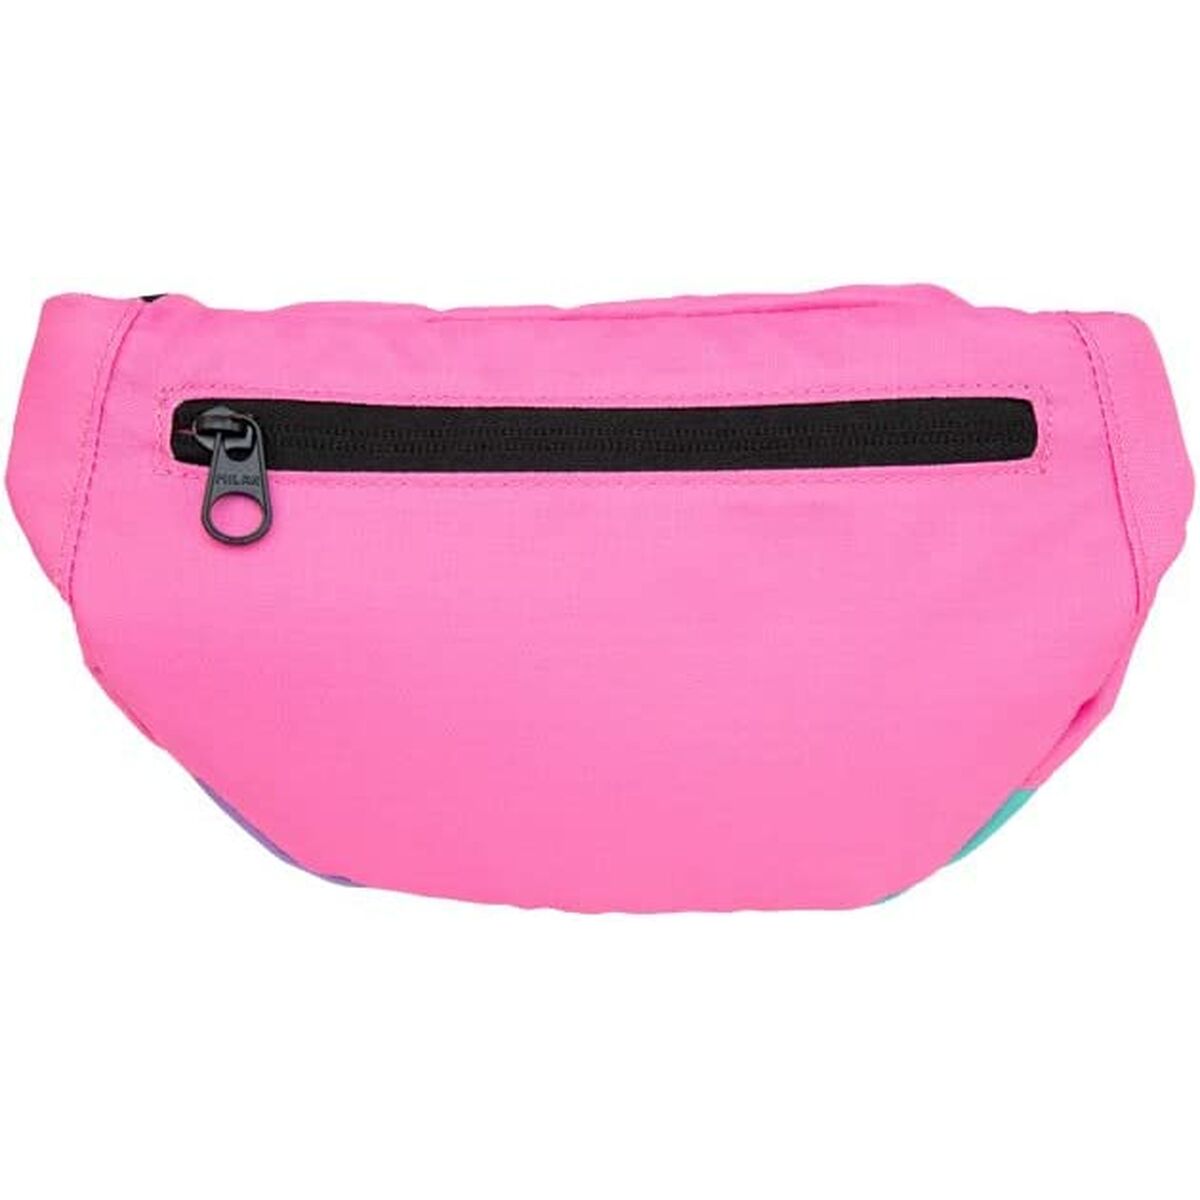 Belt Pouch Milan Sunset Pink 30 x 15 x 8,5 cm